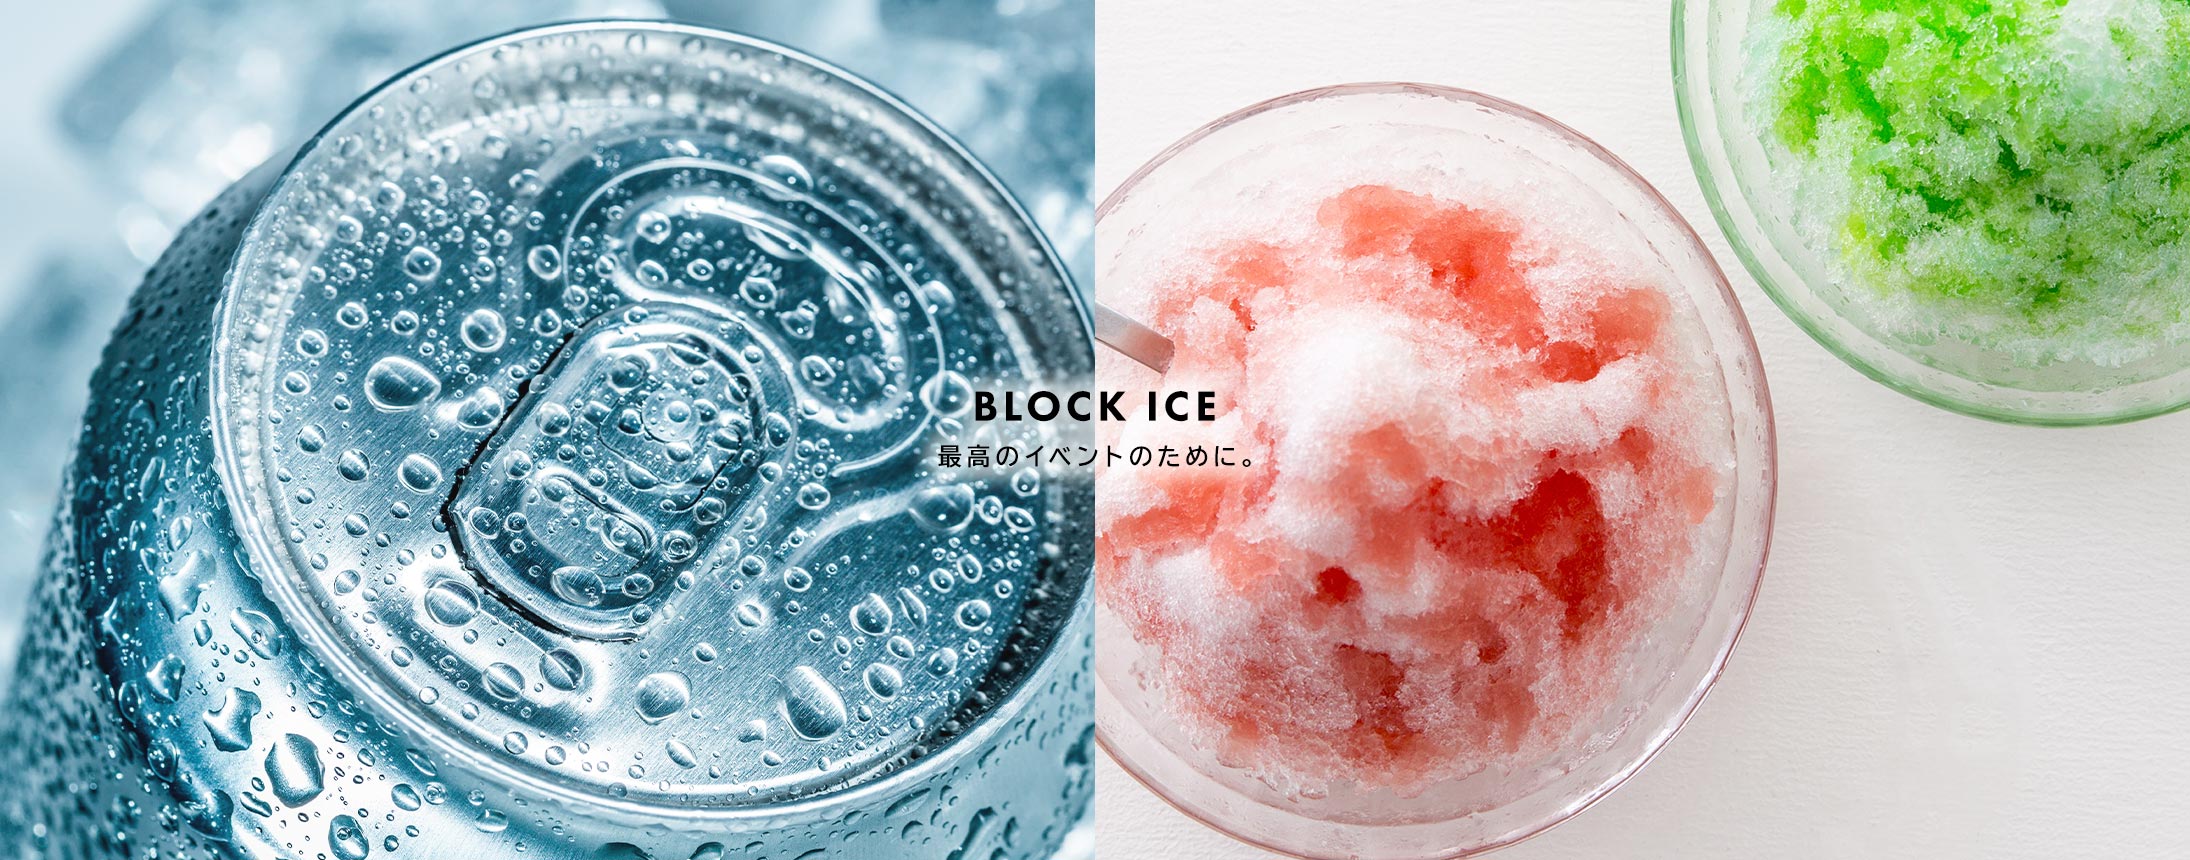 BLOCK ICE